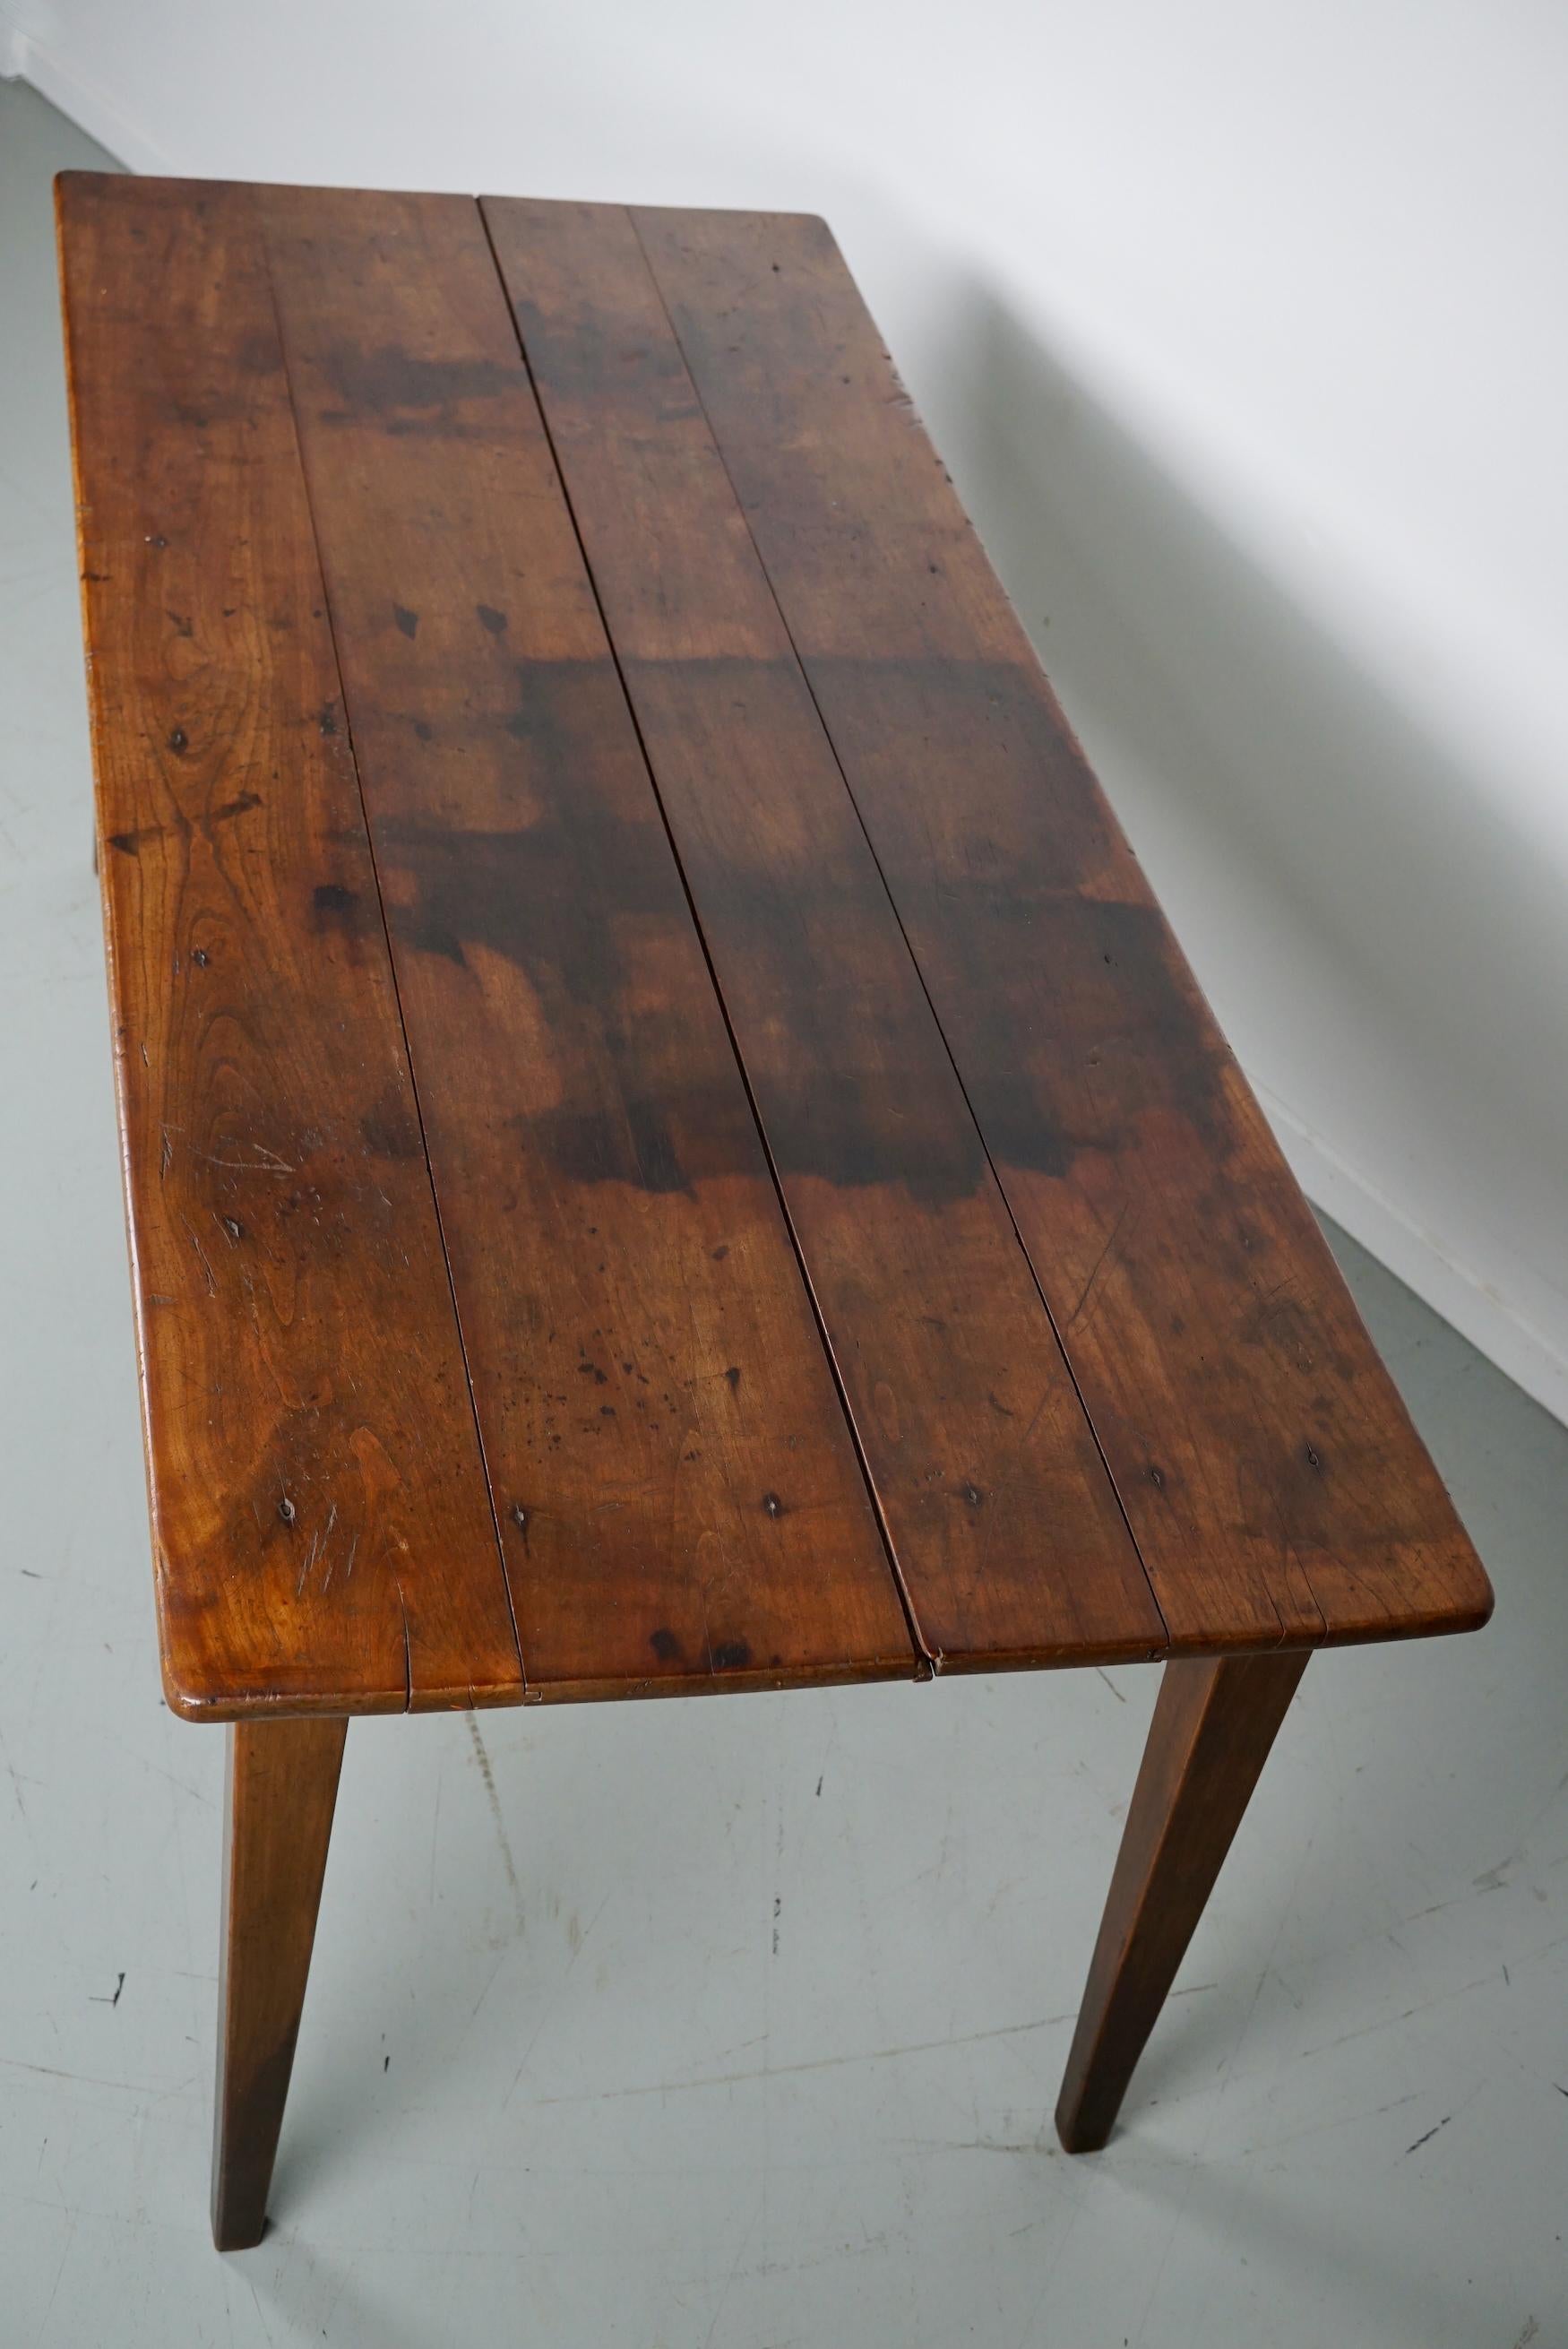 Cette élégante table a été fabriquée en France au XIXe siècle. La table a été fabriquée en bois fruitier avec de magnifiques veinures. Elle a une couleur claire très chaude et la table présente de nombreuses marques d'utilisation, d'anciennes